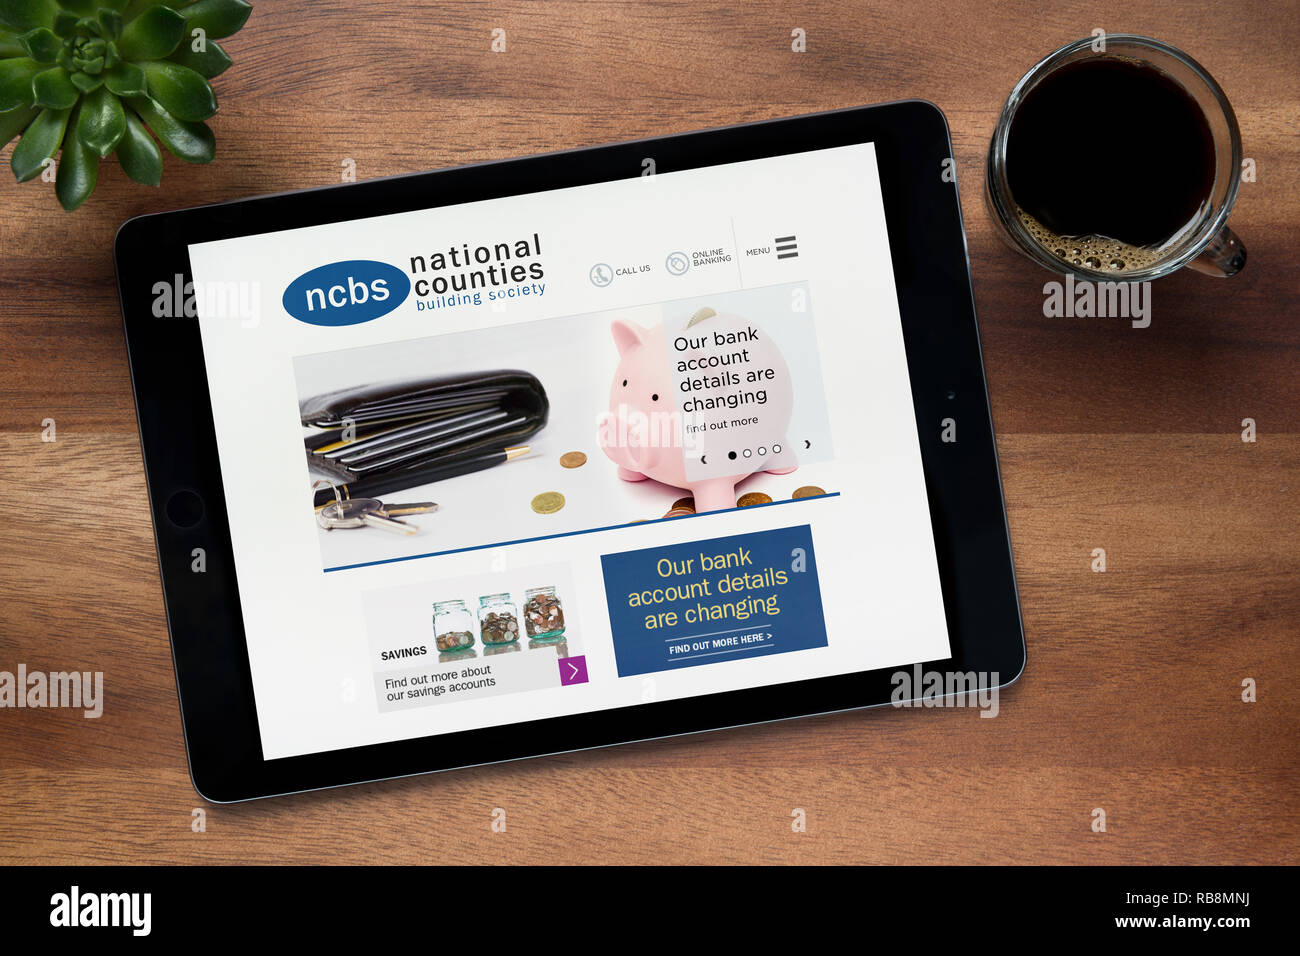 Il sito Web della National Counties Building Society è visto su un tablet iPad appoggiato su un tavolo di legno (solo uso editoriale). Foto Stock